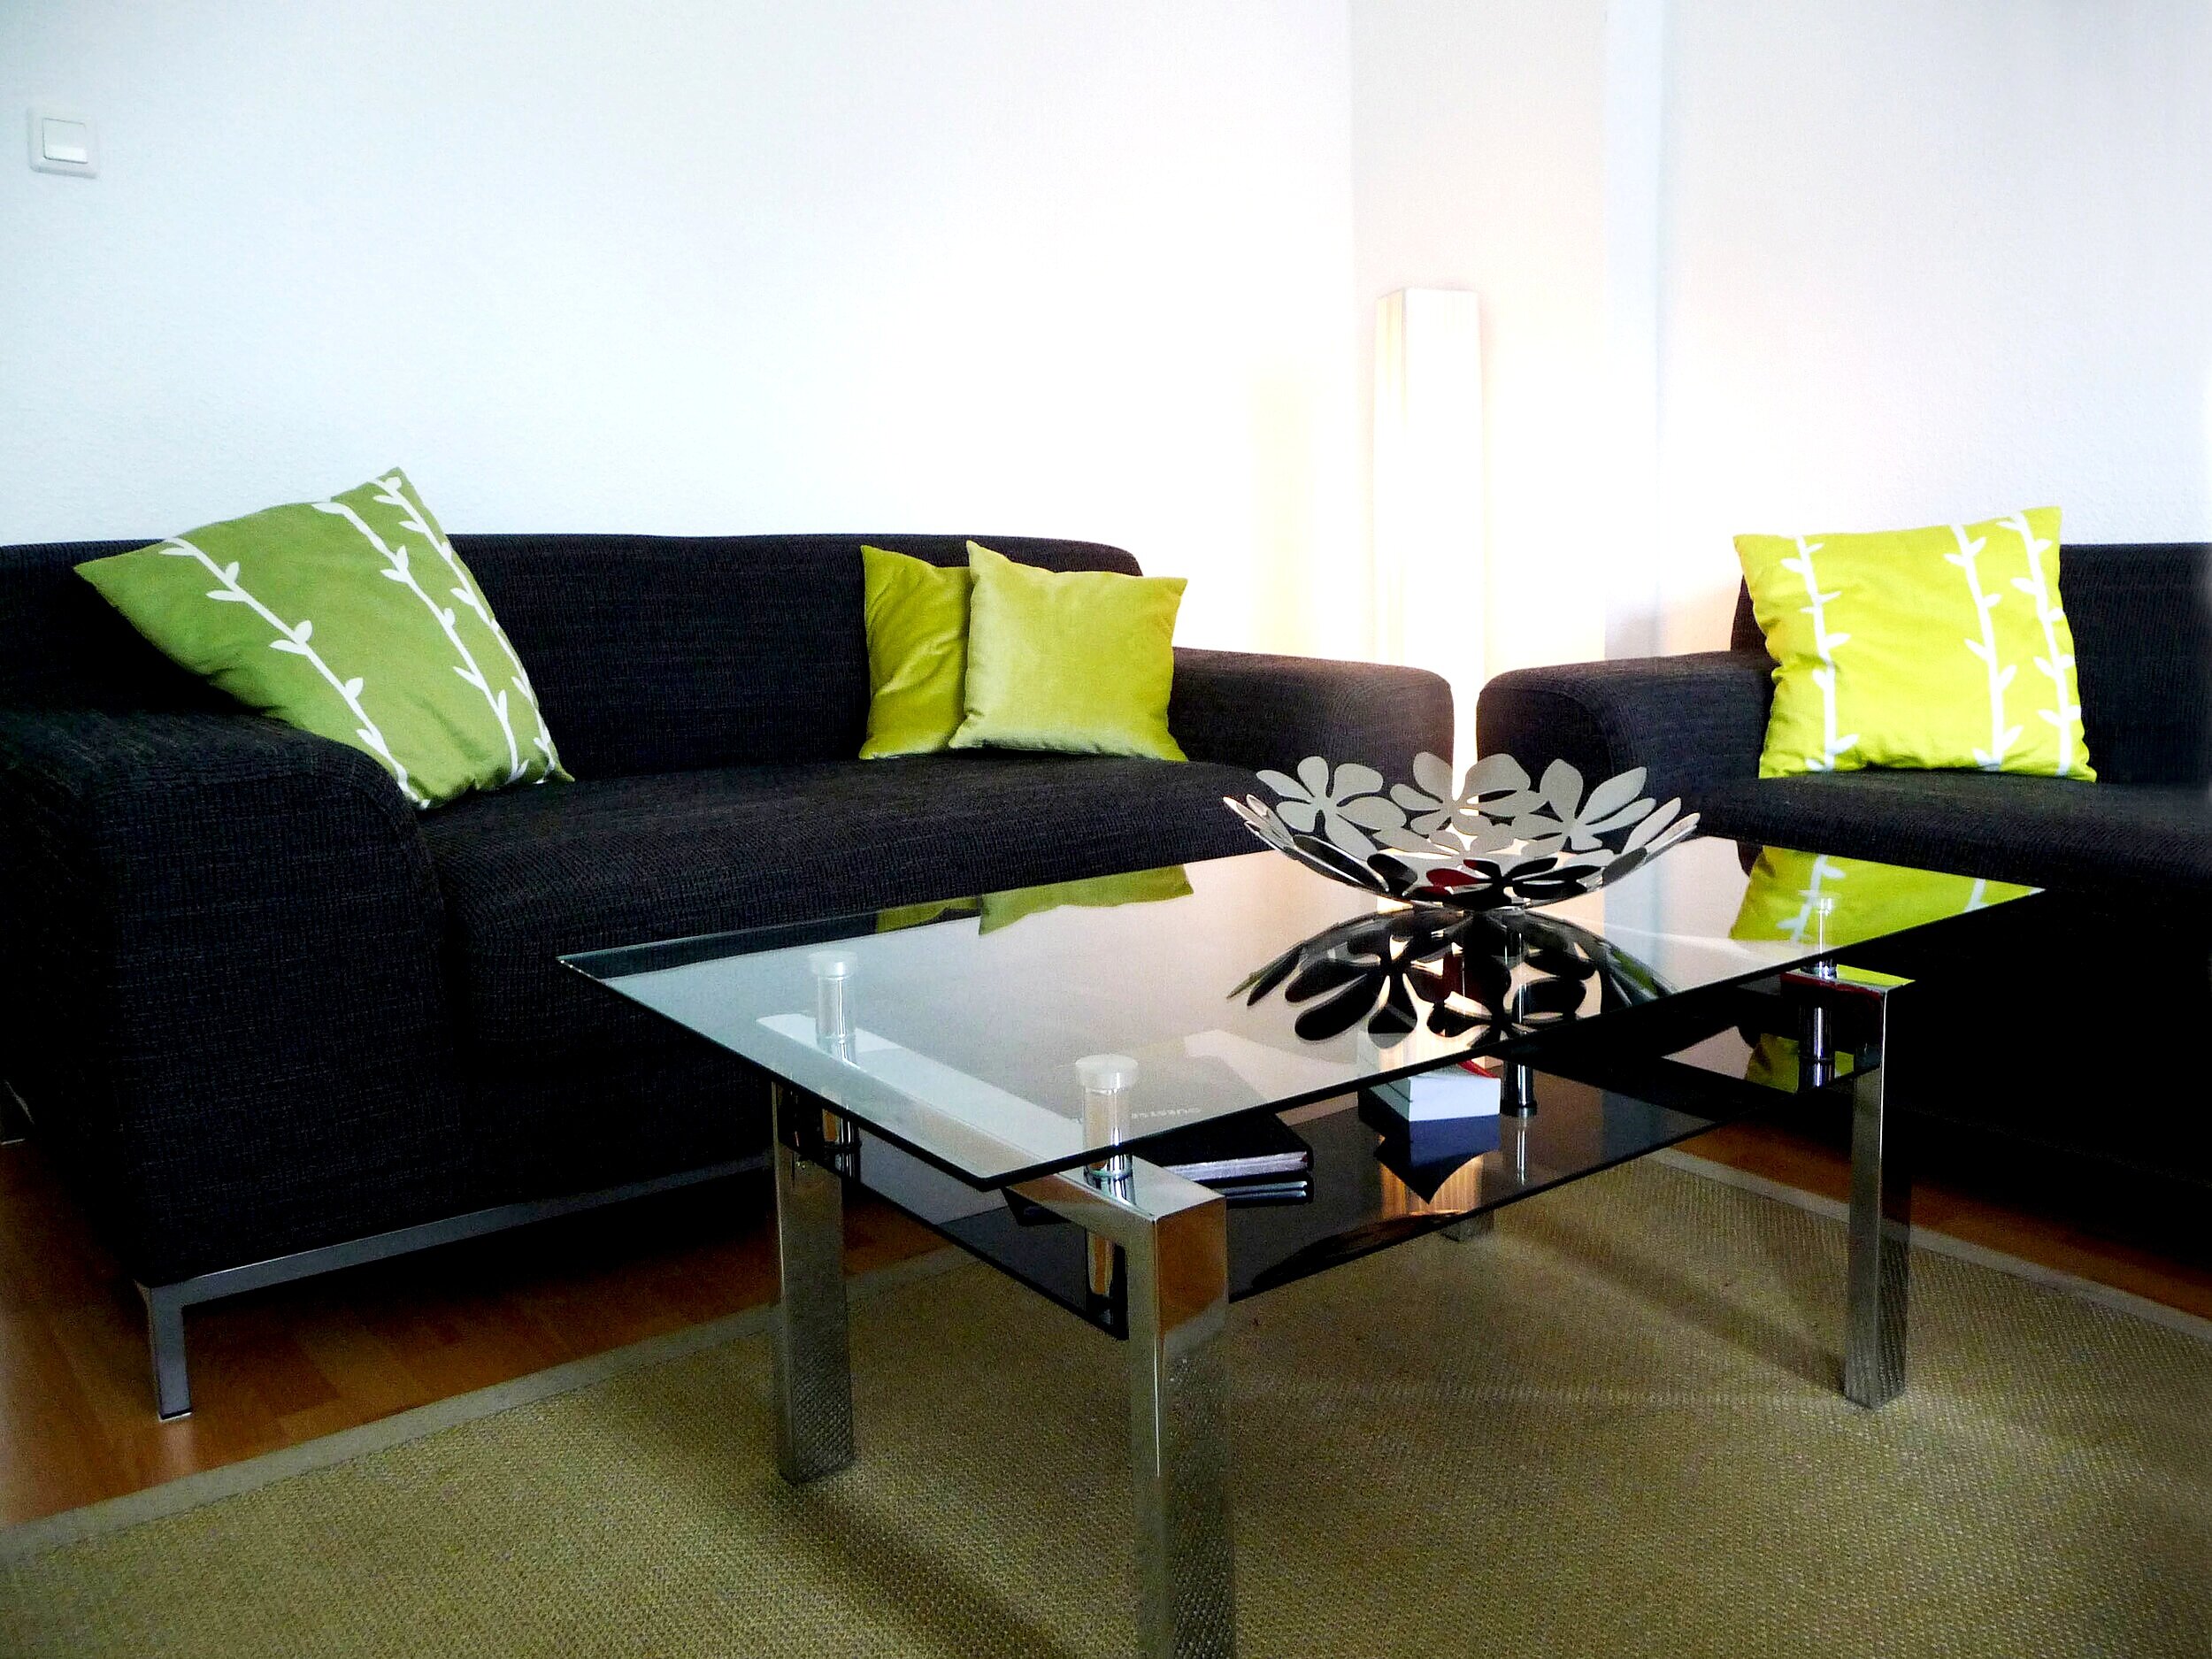 sofaer+med+lys+og+bord+RT.jpg